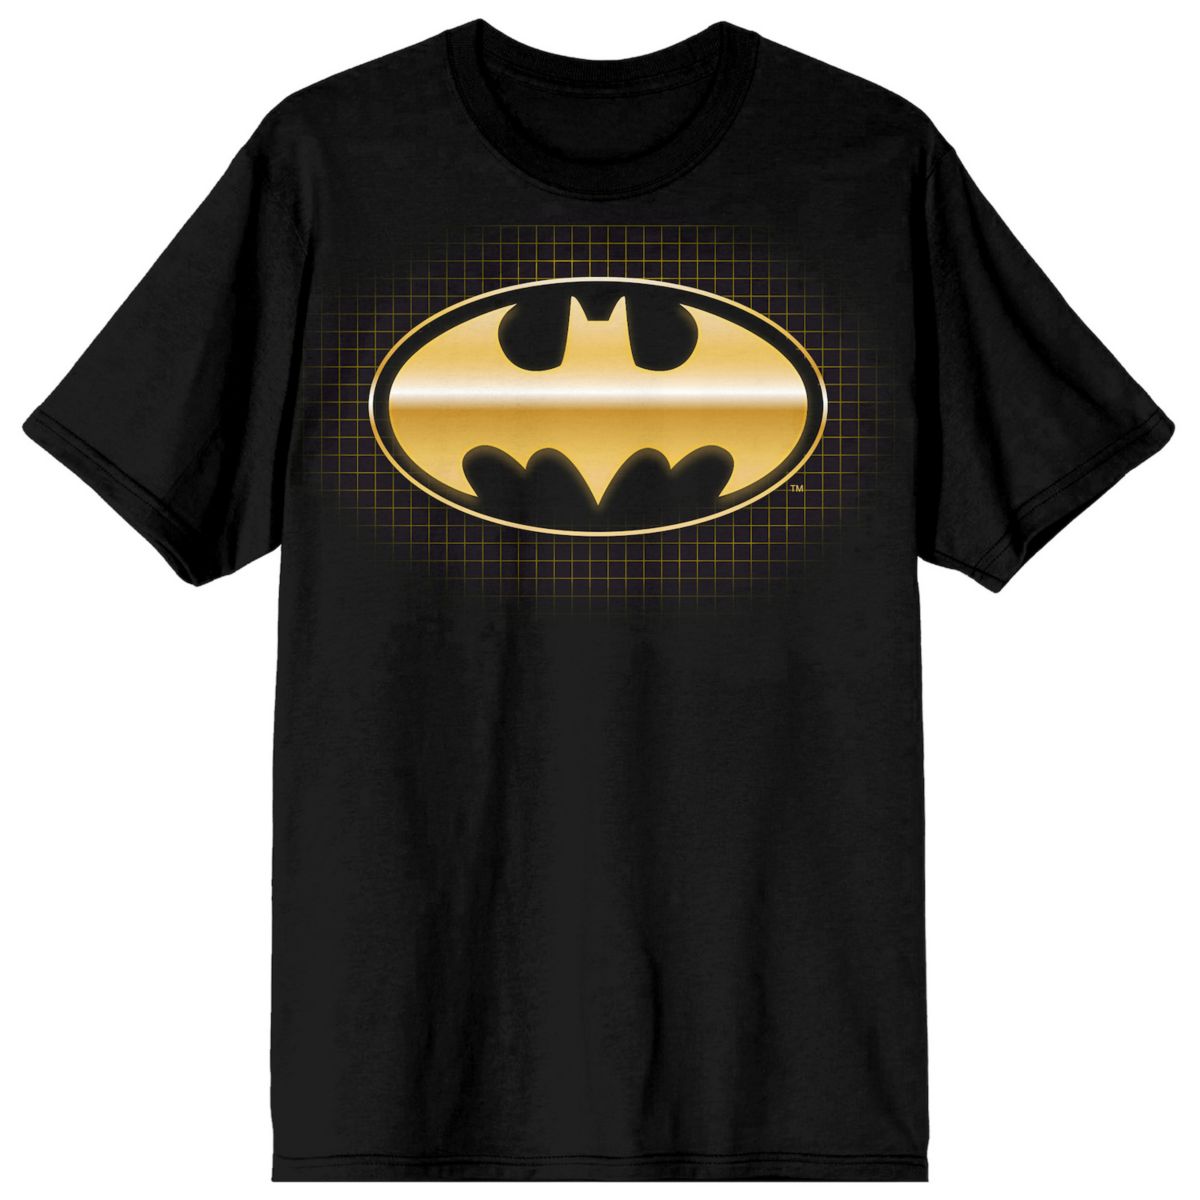 Футболка Бэтмен. Футболка красная Бэтмен. Цвет Бэтмен металлик. Metal bat Shirt ID.